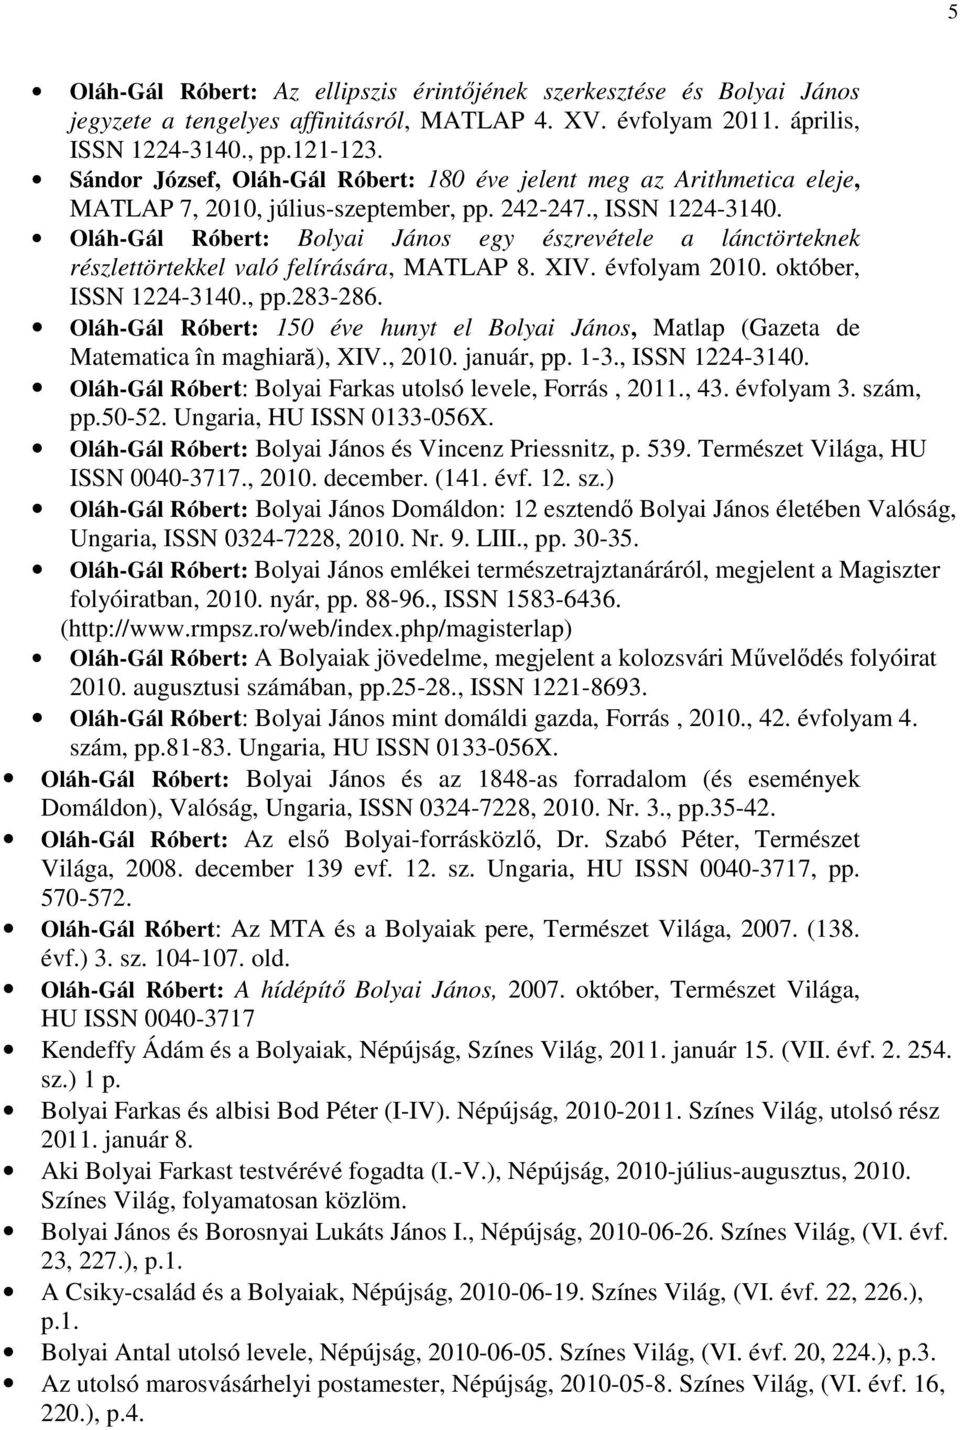 Oláh-Gál Róbert: Bolyai János egy észrevétele a lánctörteknek részlettörtekkel való felírására, MATLAP 8. XIV. évfolyam 2010. október, ISSN 1224-3140., pp.283-286.